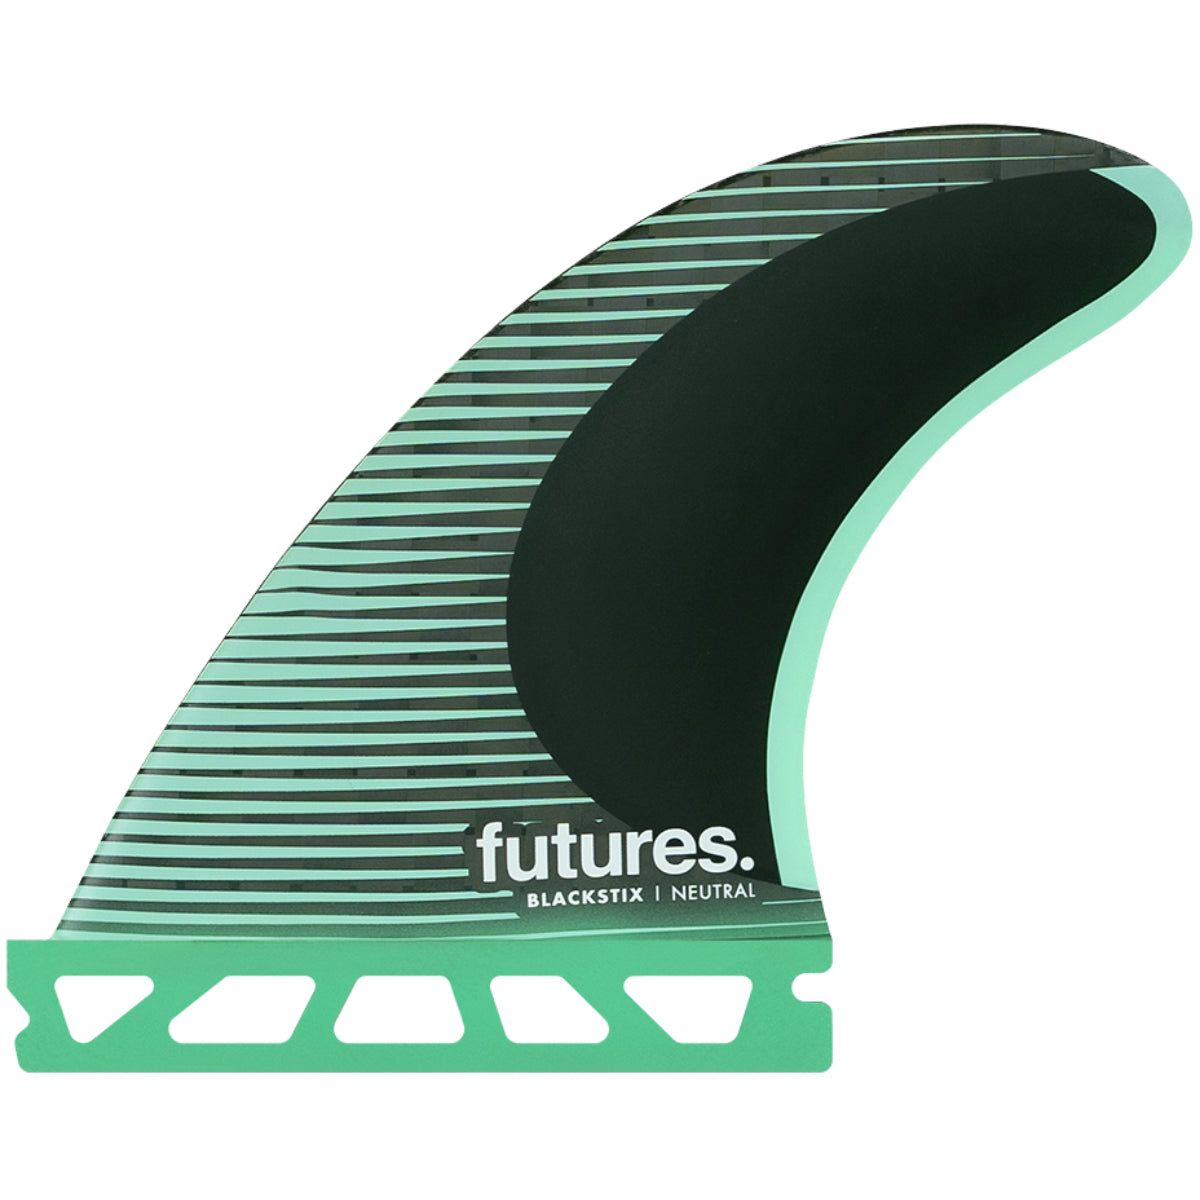 Futures フィン F4 BLACKSTICS 3.0-